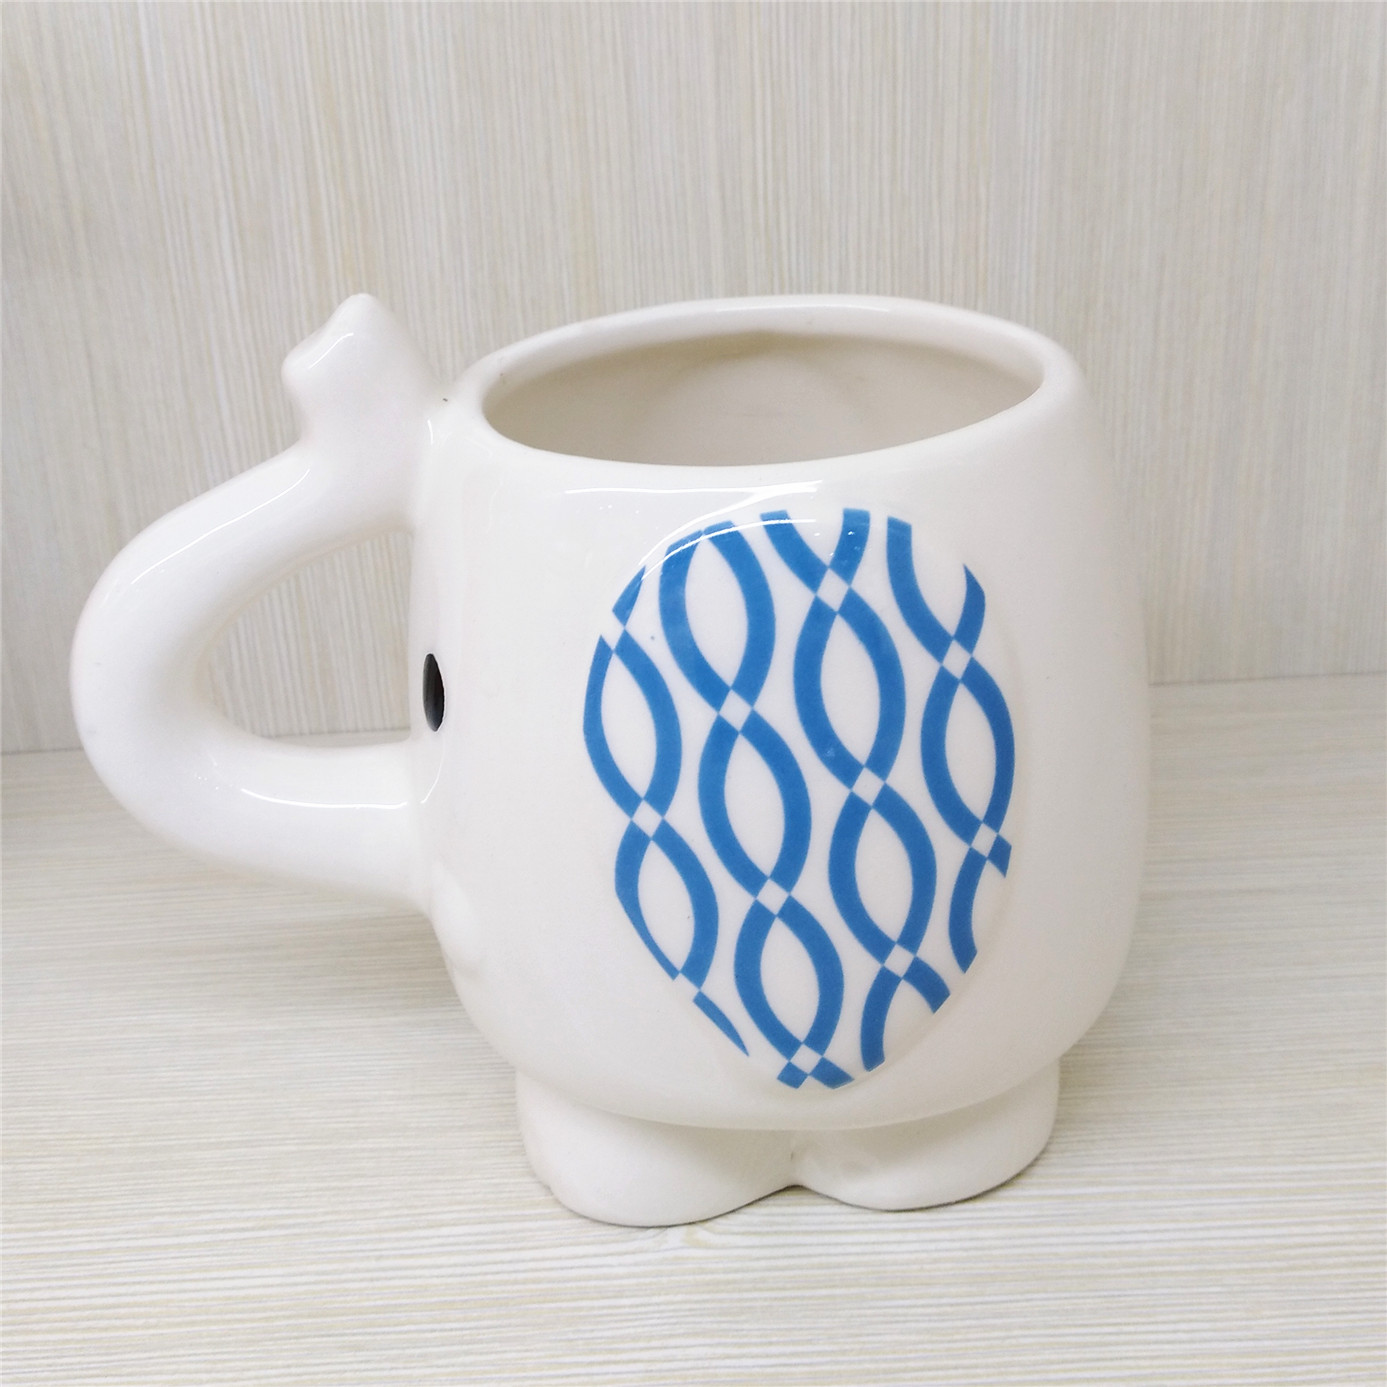 White  ceramic factory  custom  high quality elephant mug  coffee mug